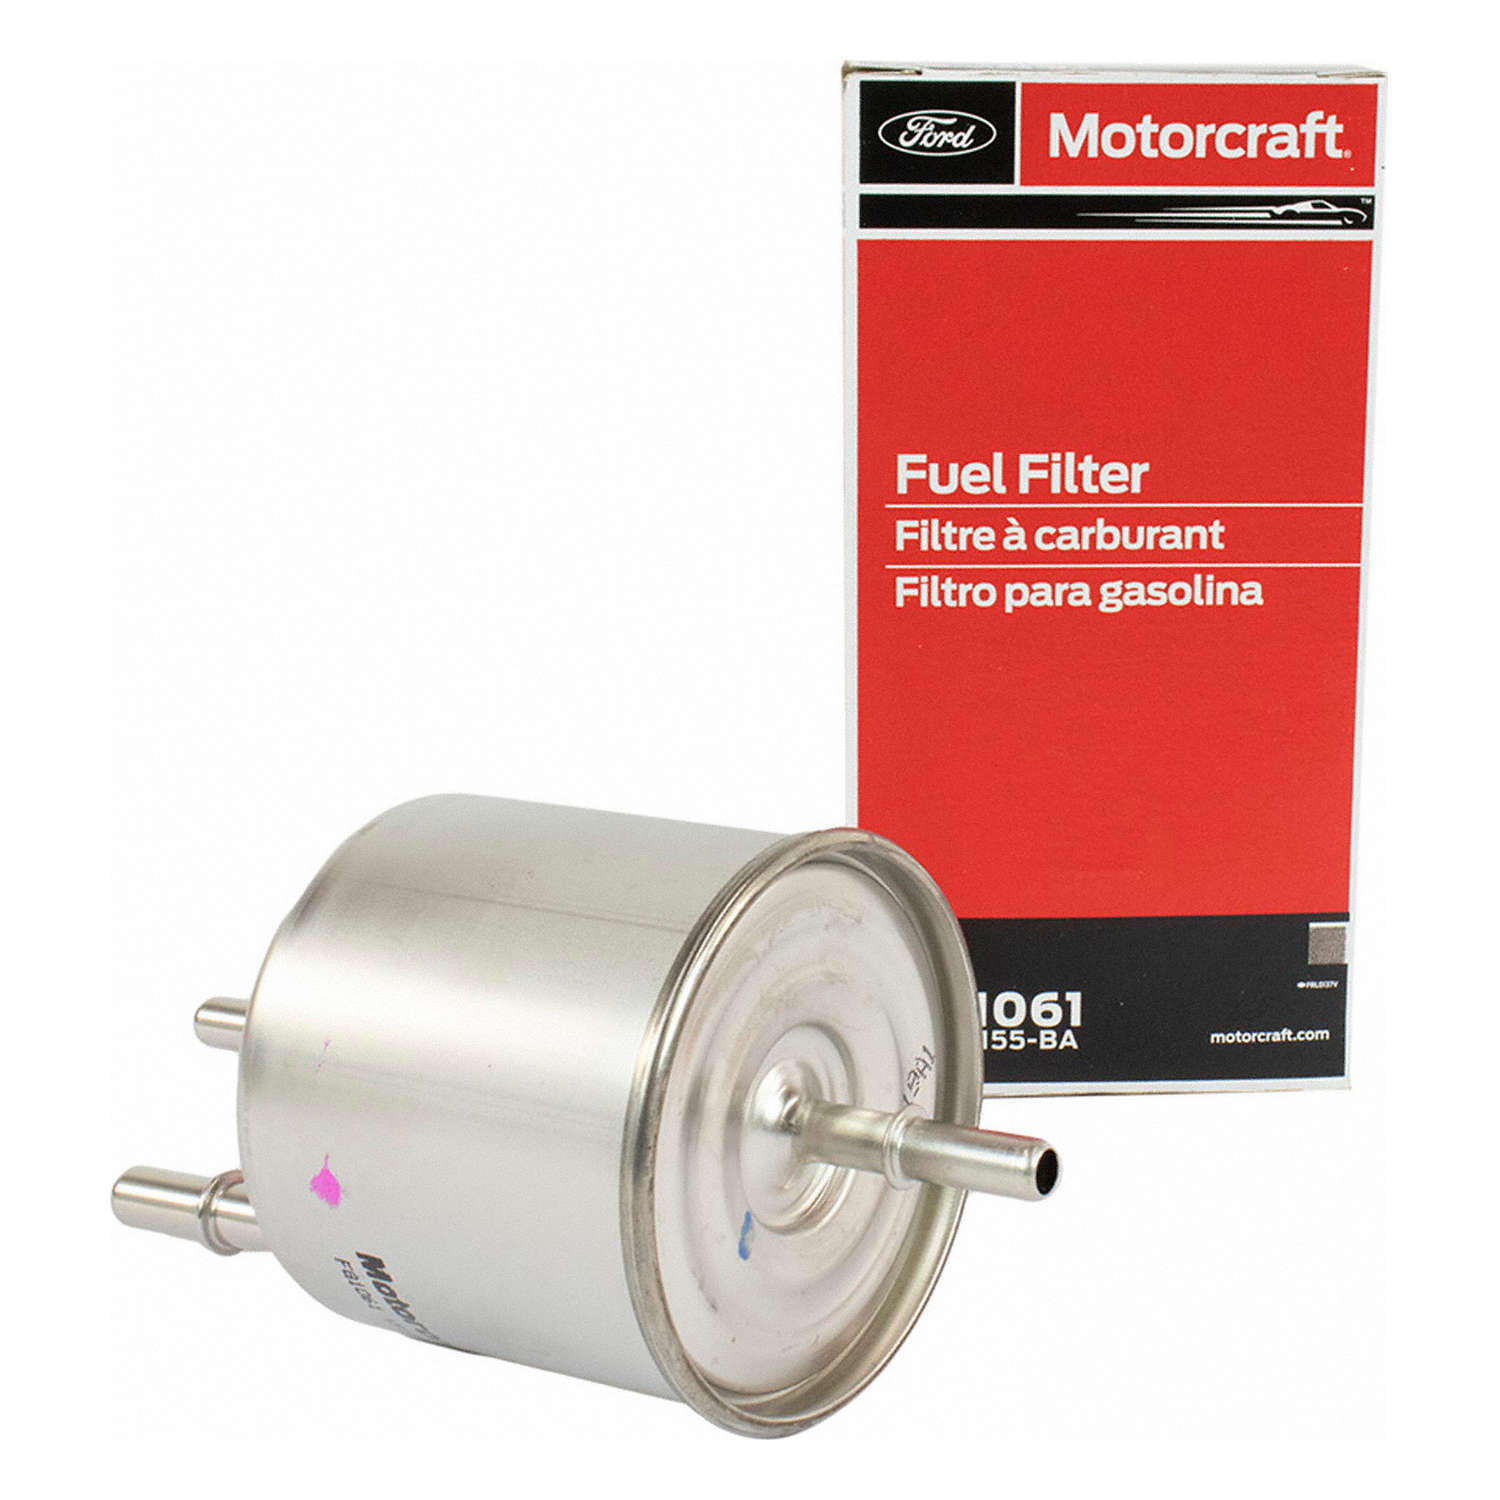 Fuel Filter Motorcraft FG-1060 